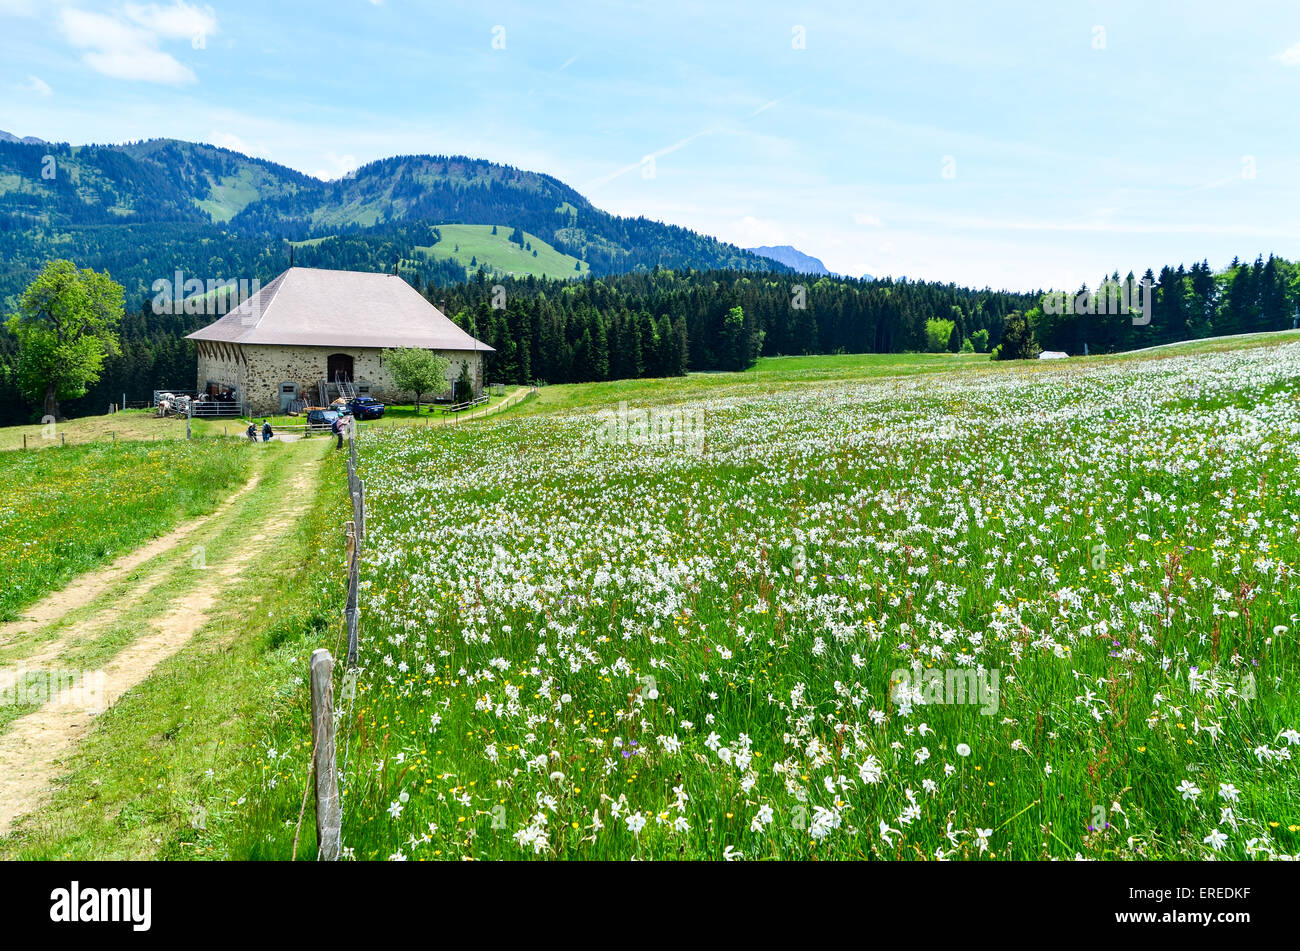 Narzisse Blumen in den Bergen der Schweiz in der Nähe von Prantin, Montreux  Stockfotografie - Alamy